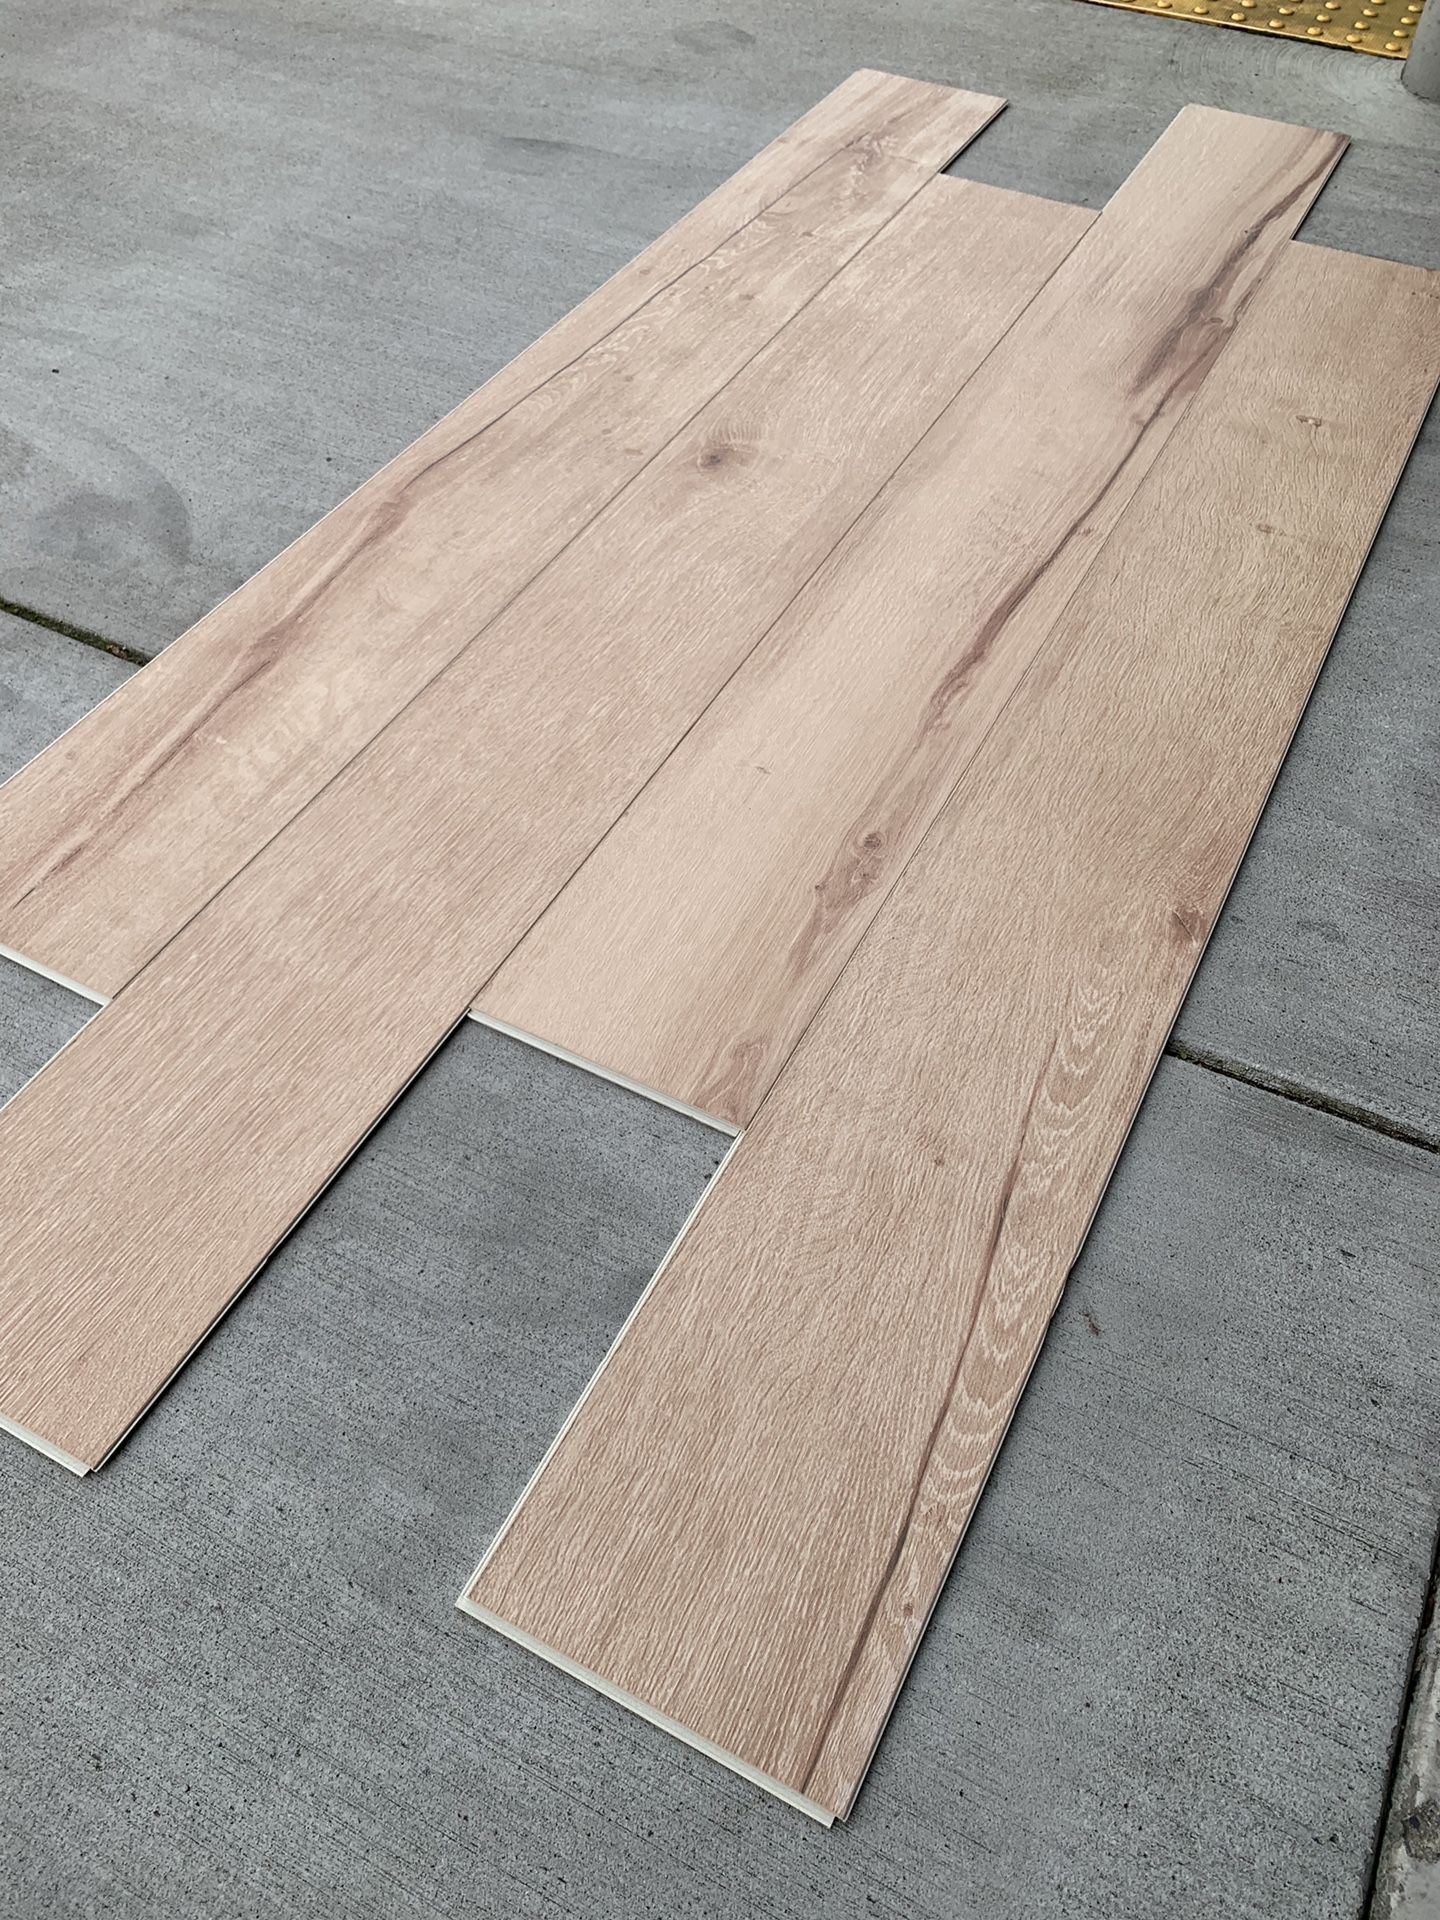 Vinyl plank waterproof flooring 7.5mm with pad @ $1. 99/sf